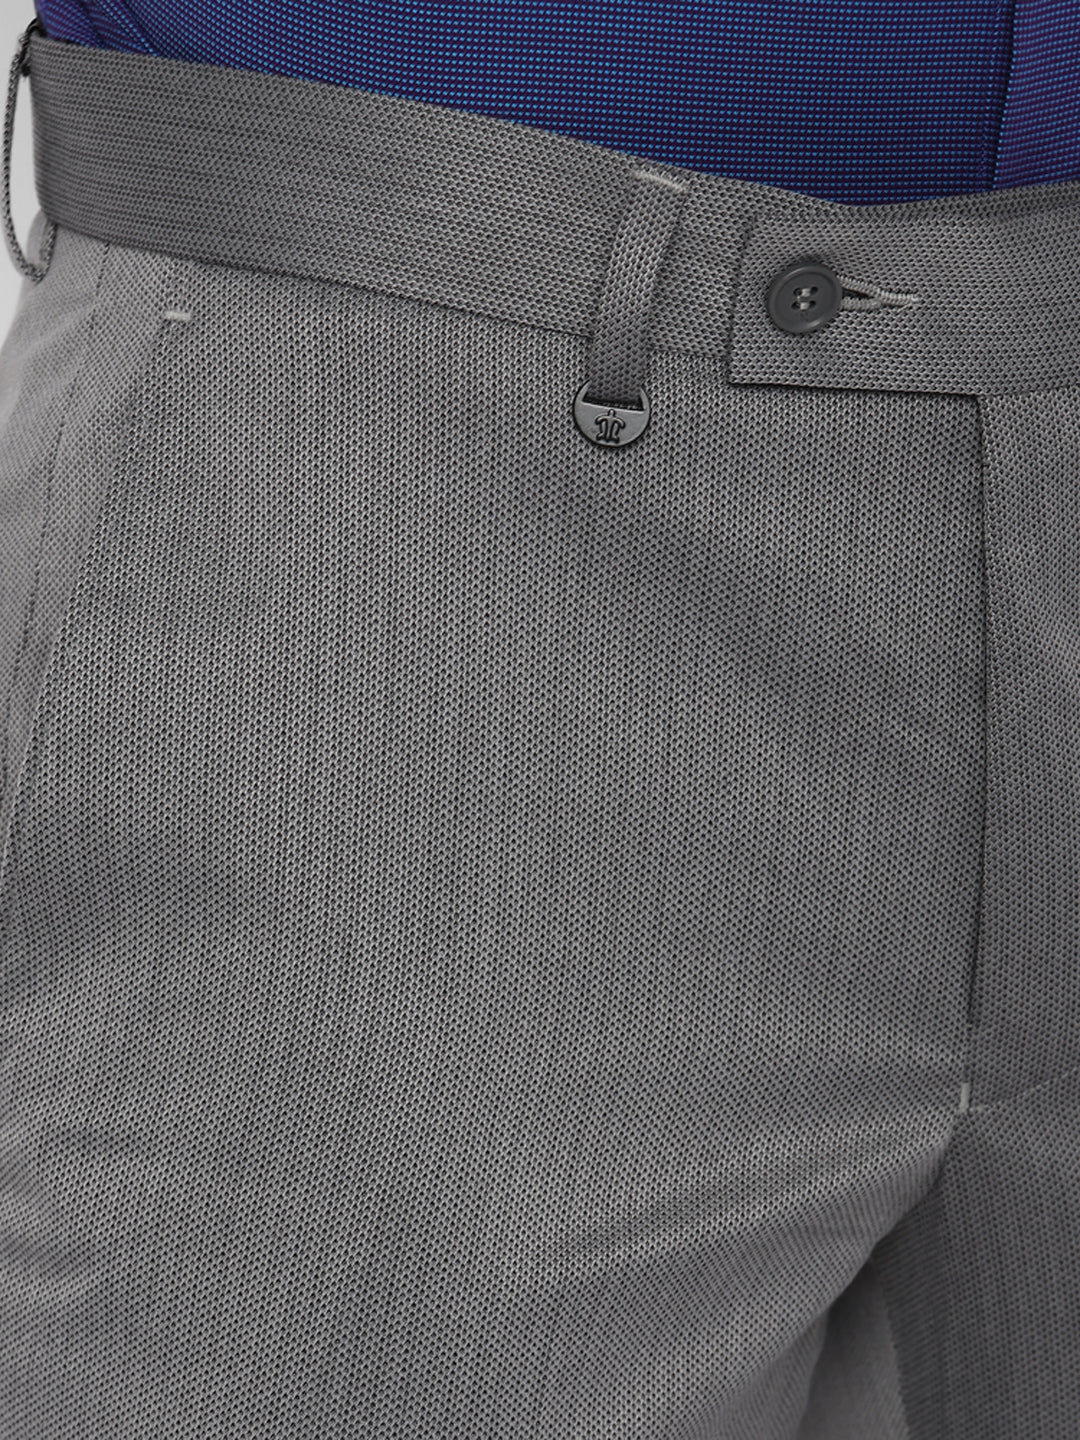 Grey Self Design Slim Fit Trouser